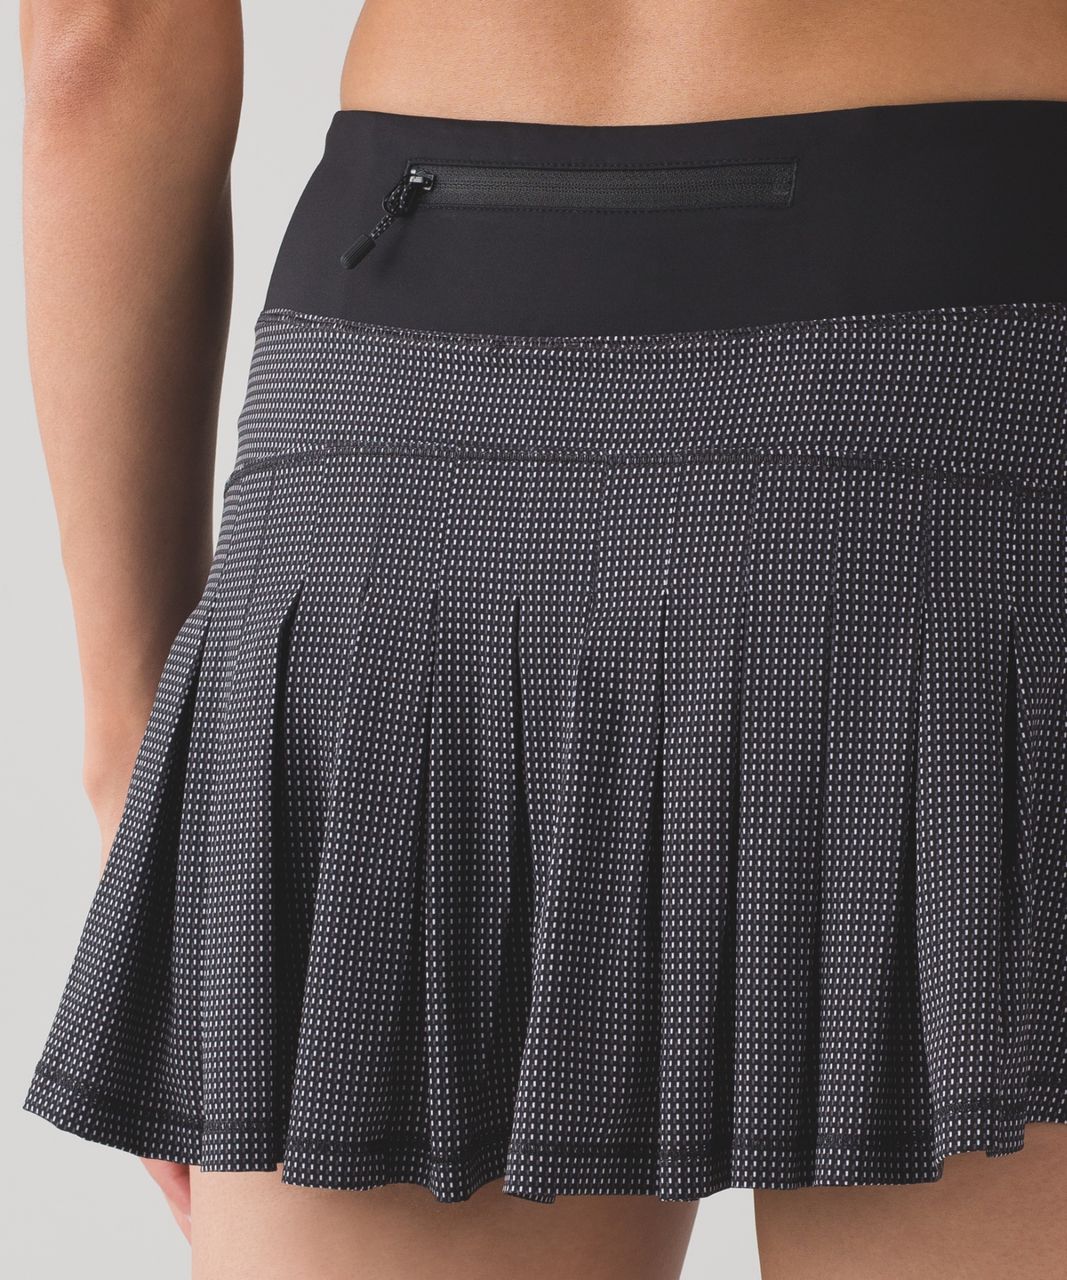 Lululemon Circuit Breaker Skirt (Regular) (13") - Teeny Check Print White Black / Black